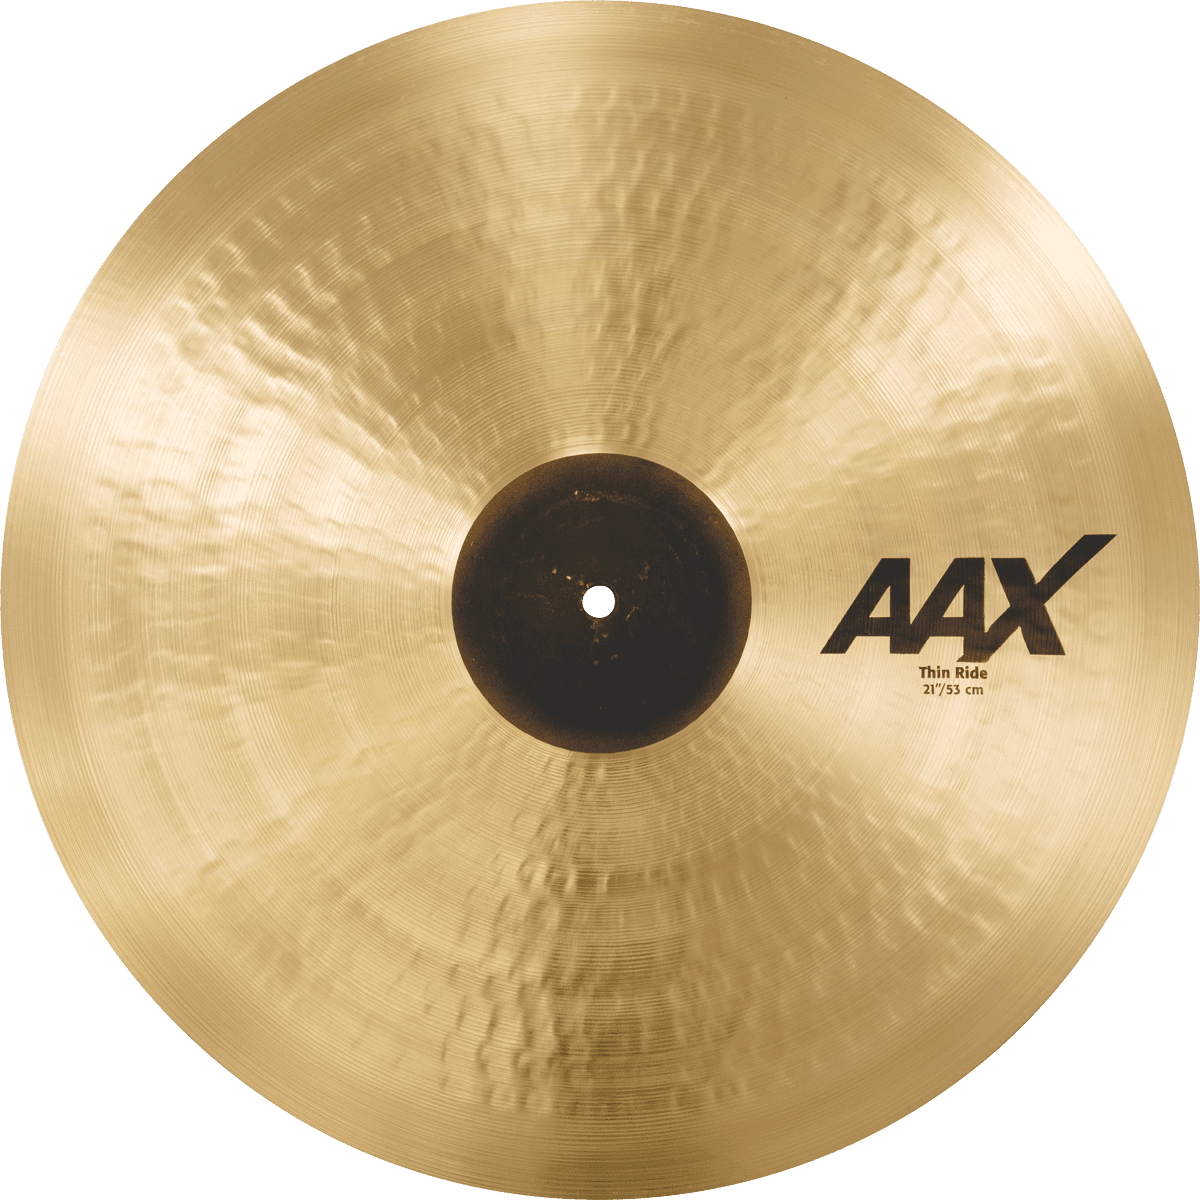 Sabian Aax Medium Ride 21 - Ride cymbal - Variation 1